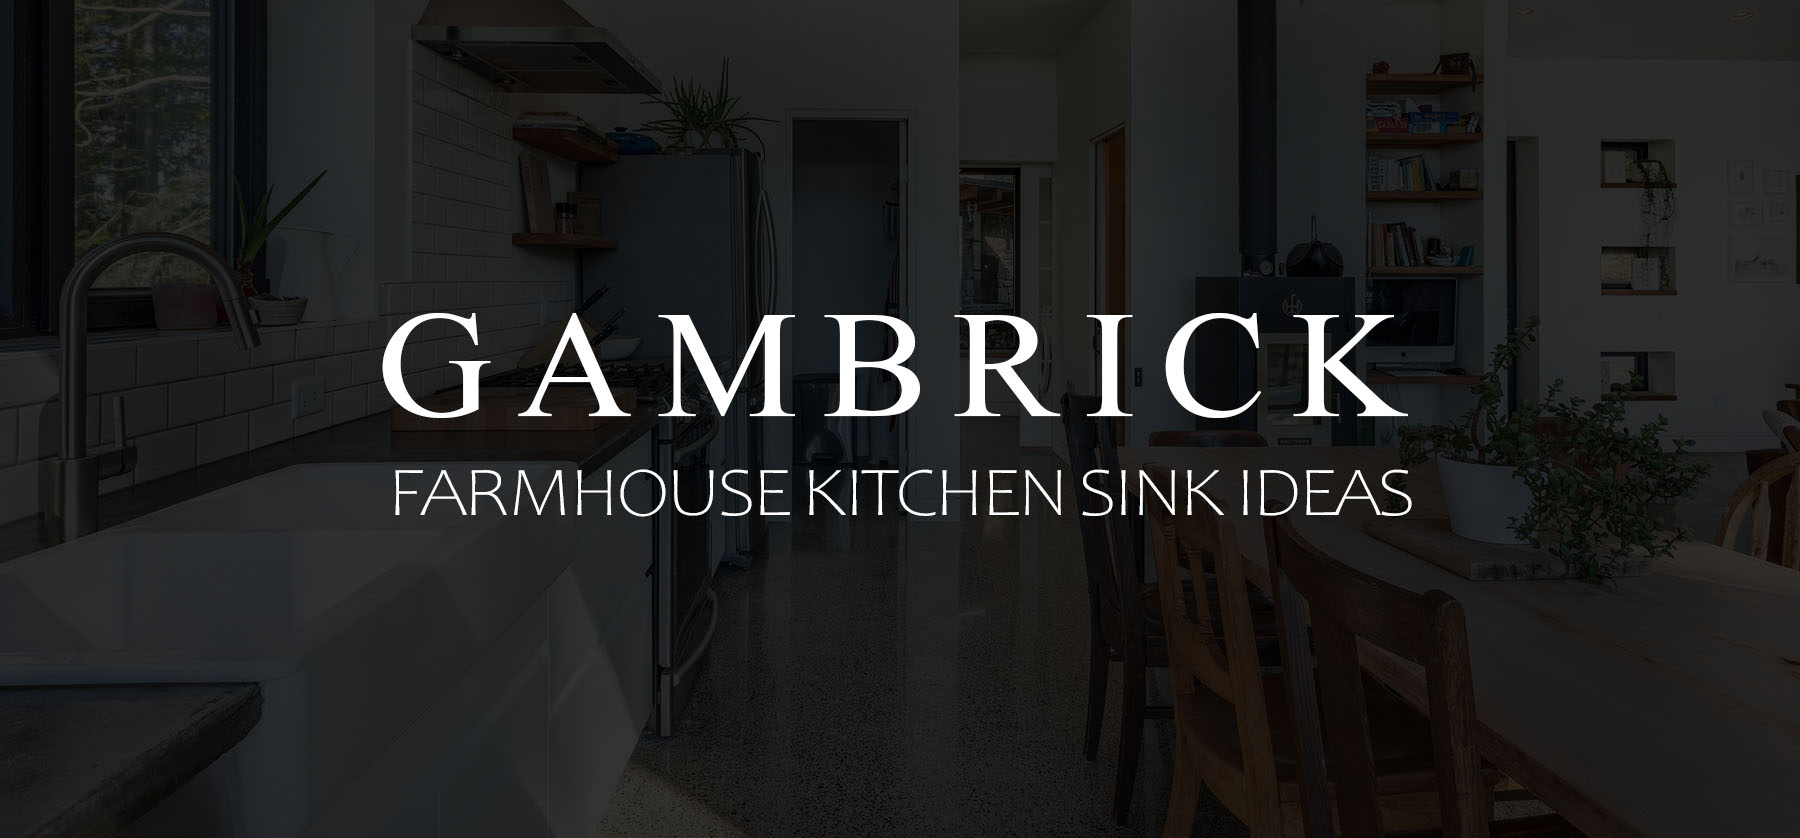 Farmhouse kitchen sink ideas & Designs banner 1